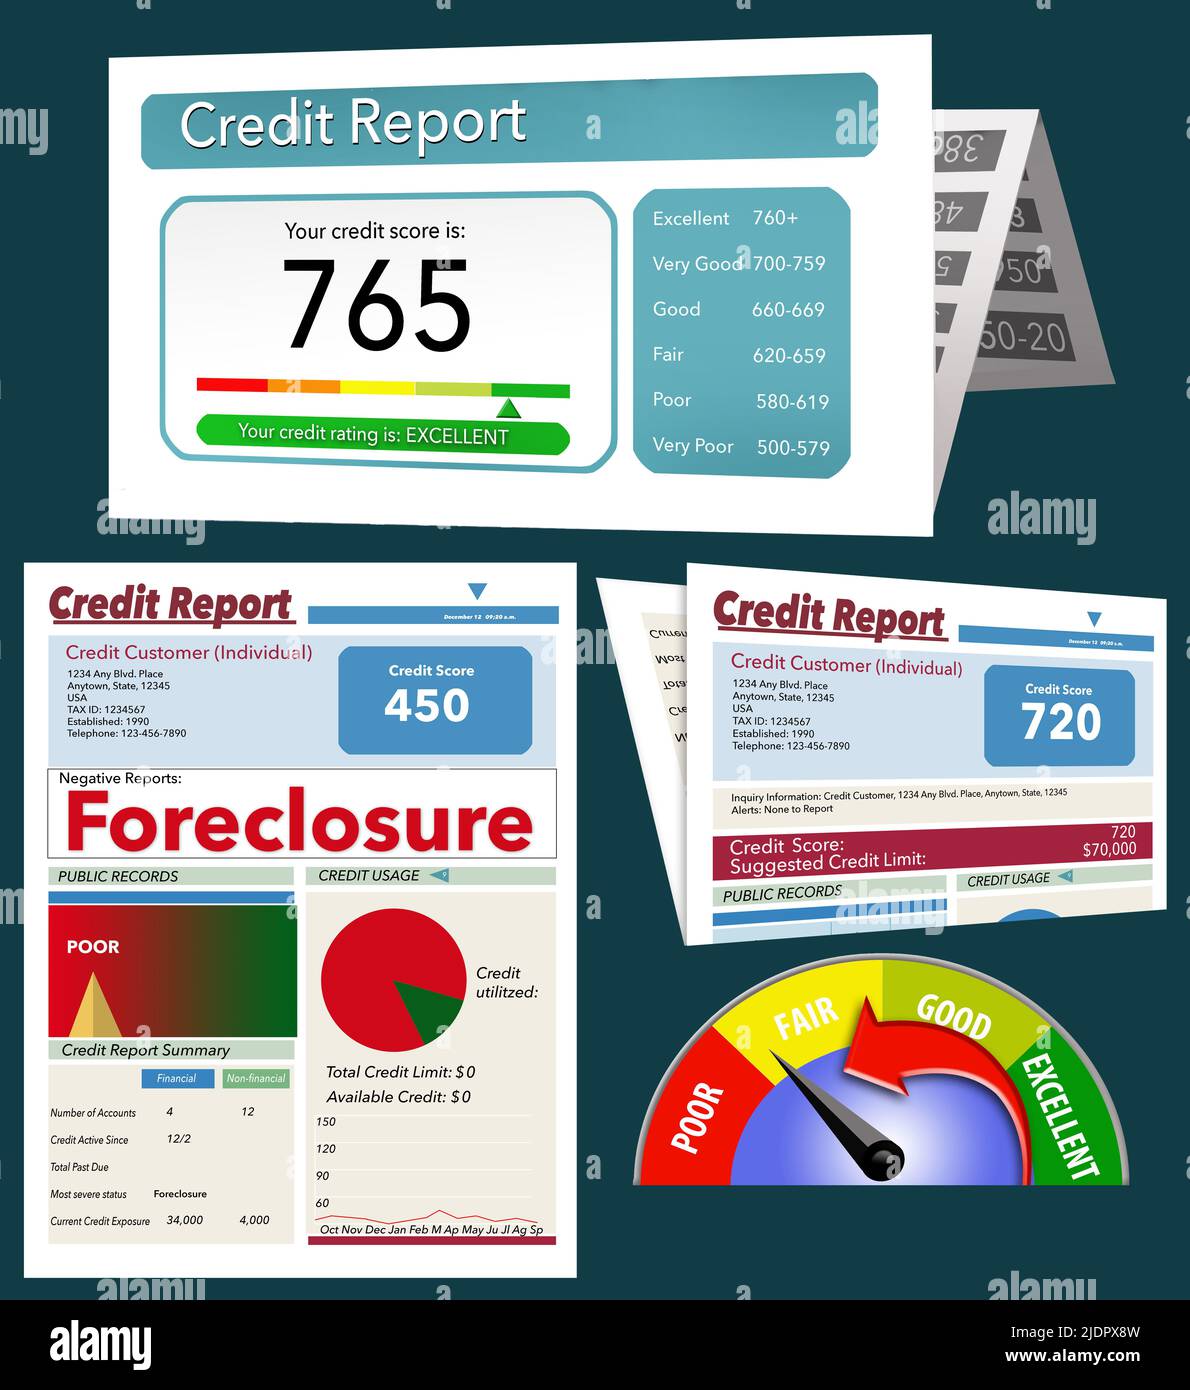 Los informes de crédito y un medidor de puntuación de crédito se consideran ilustraciones en 3-d que se utilizan como recursos gráficos. Foto de stock